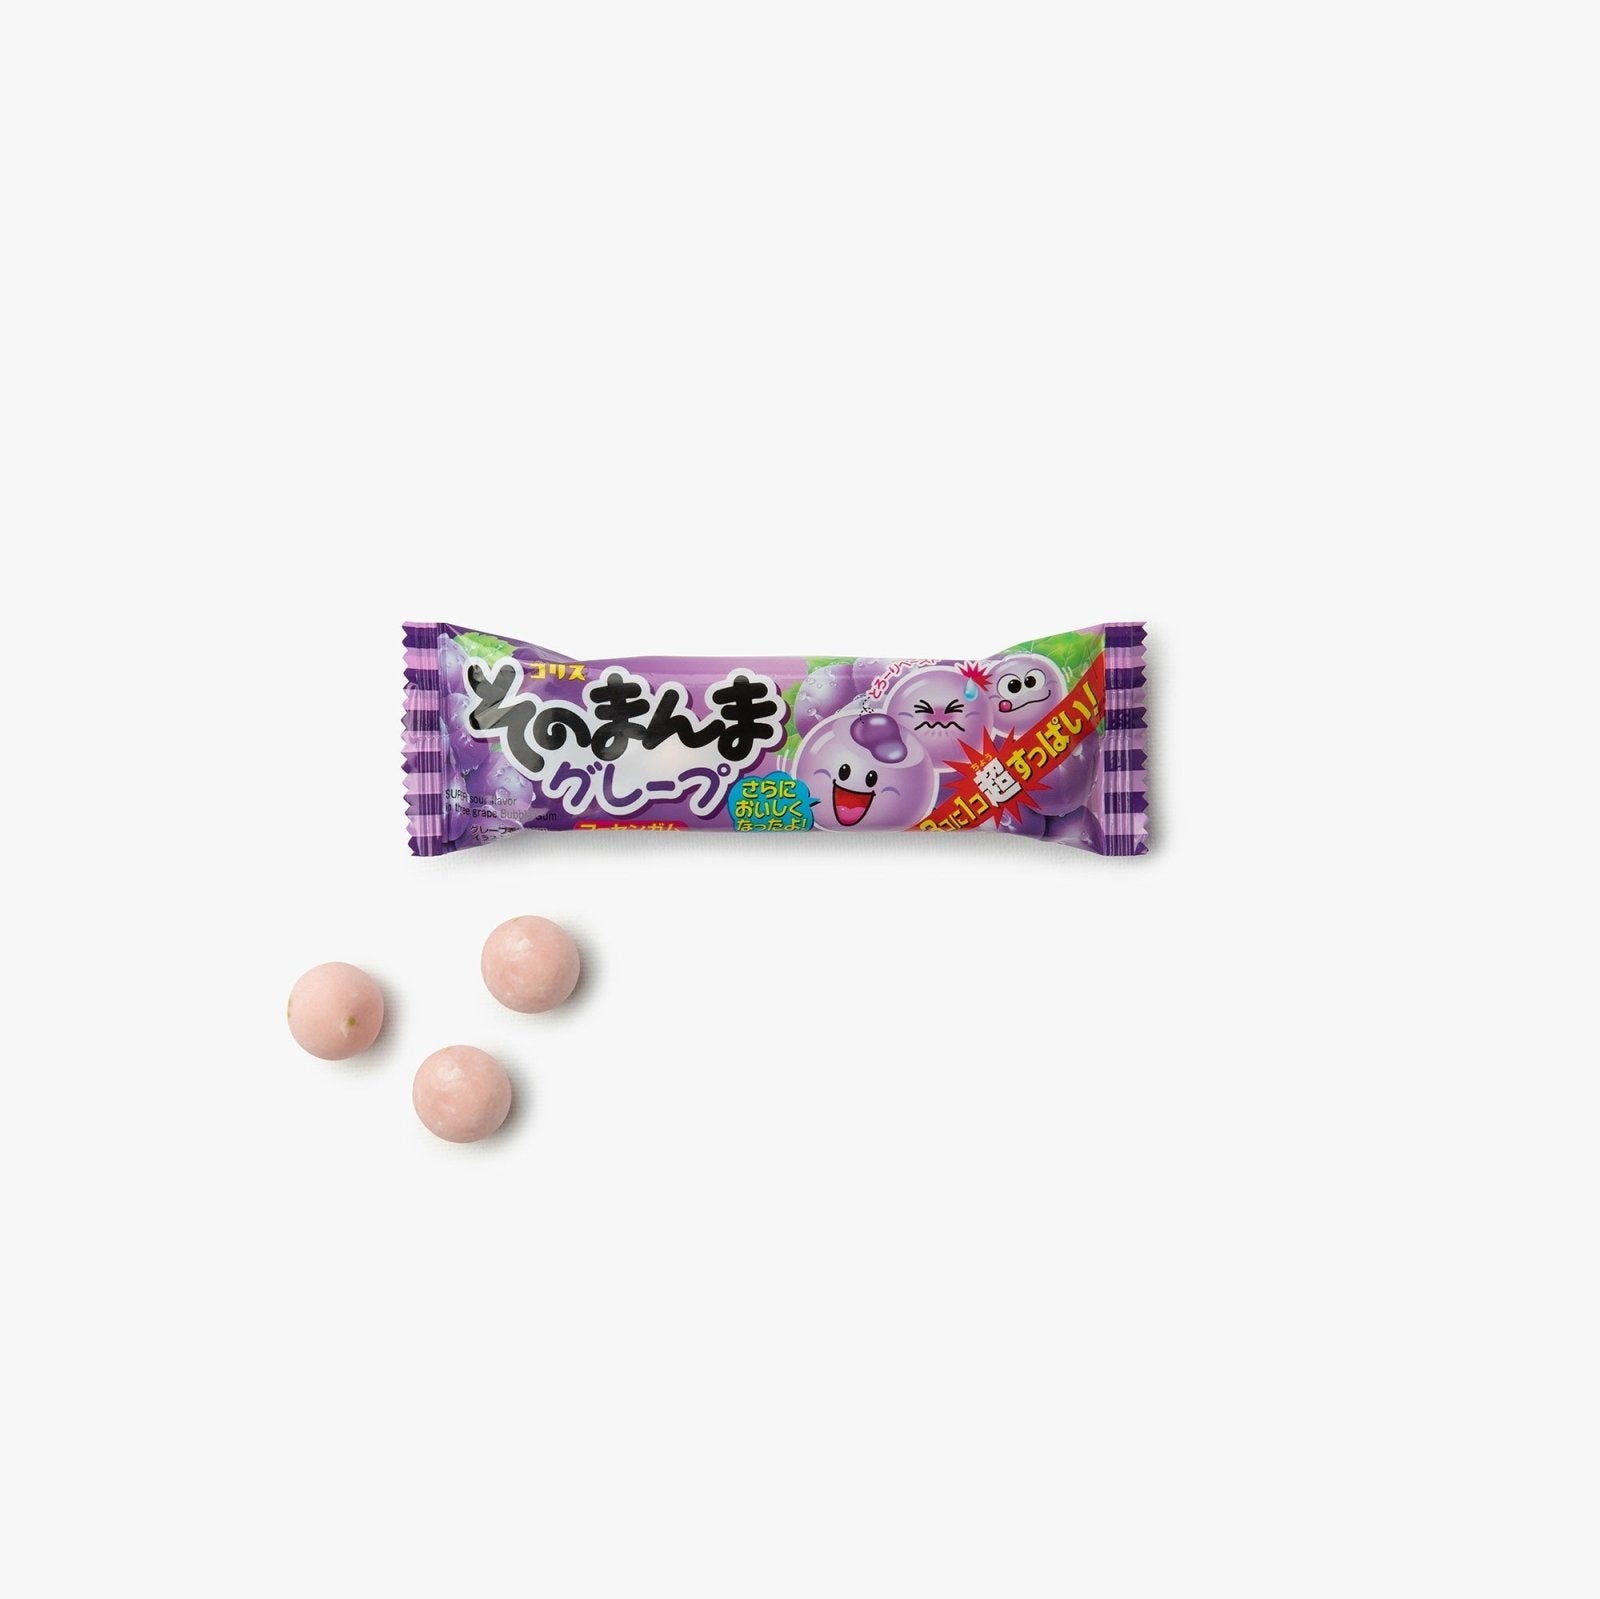 Chewing-gum cœur fondant au raisin - 14g - Coris - iRASSHAi